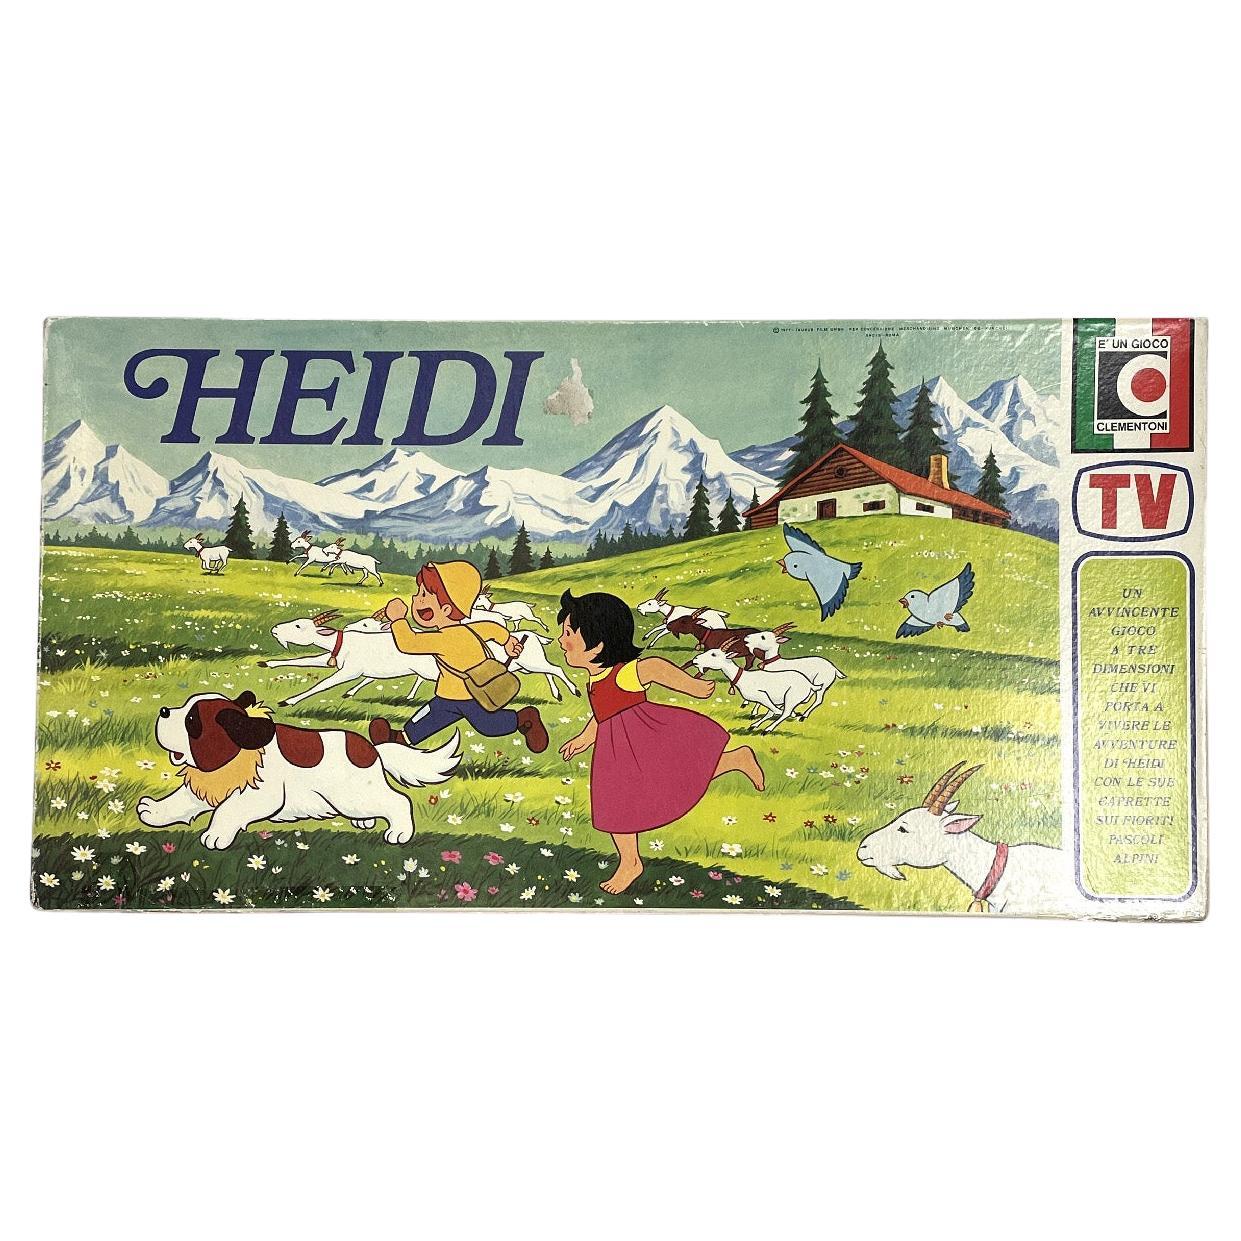 Modernes italienisches Heidi-Brettspiel von Clementoni, 1980er Jahre